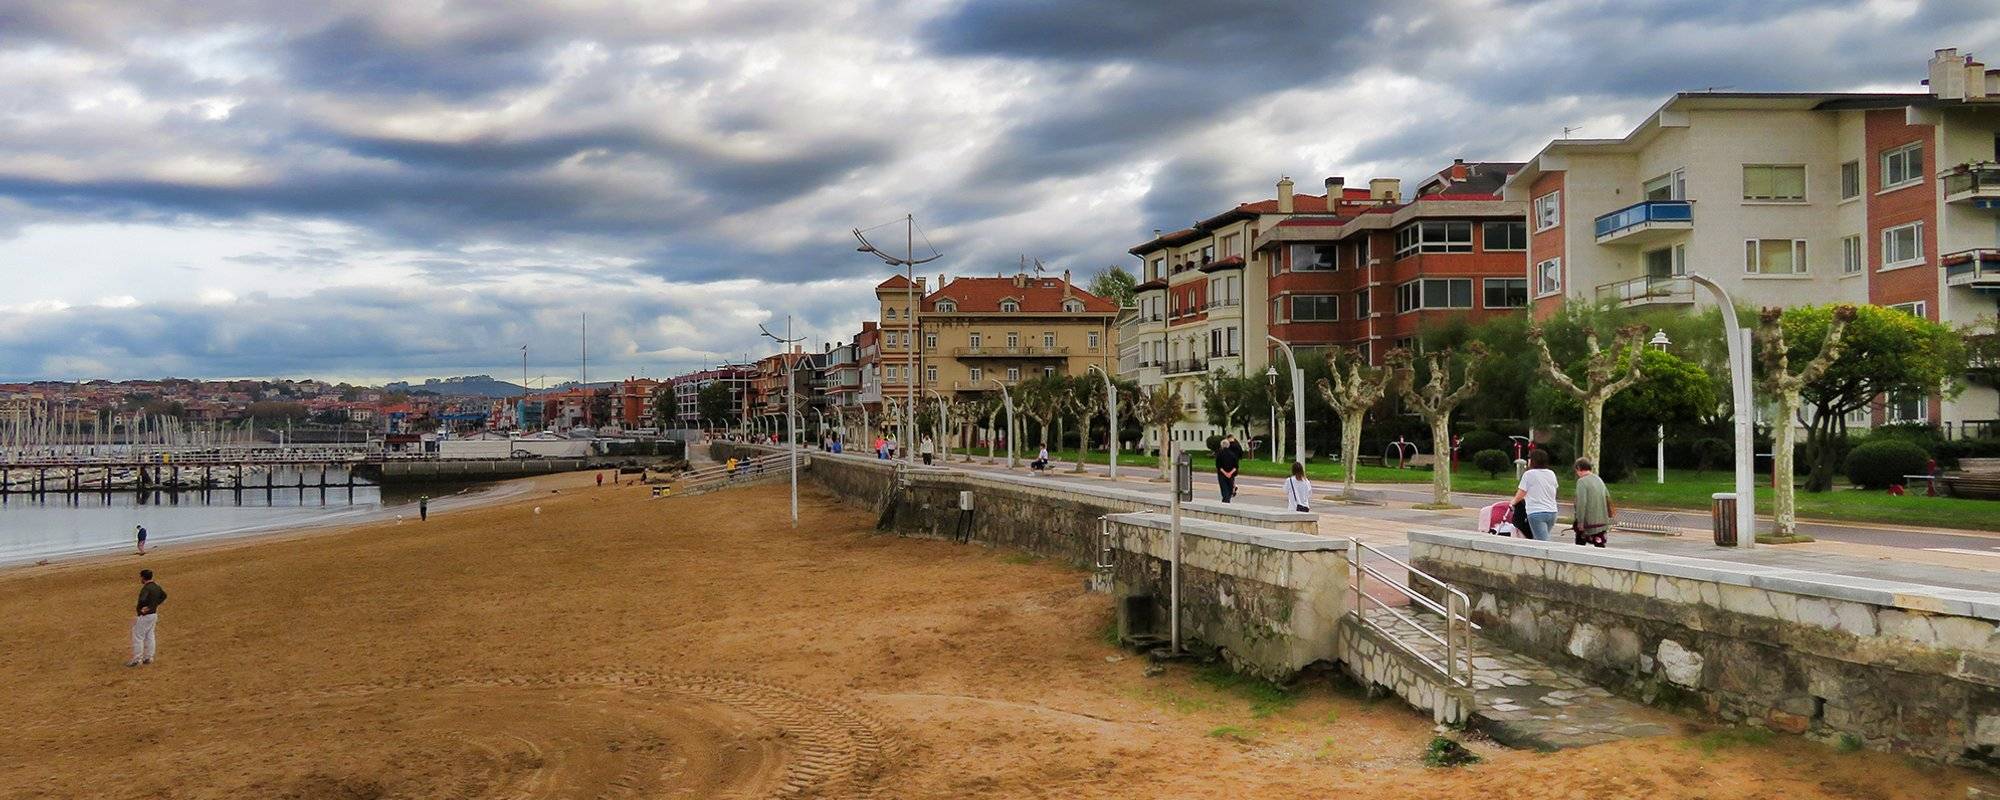 The beauty of Las Arenas-Vizcaya, Basque country - Spain